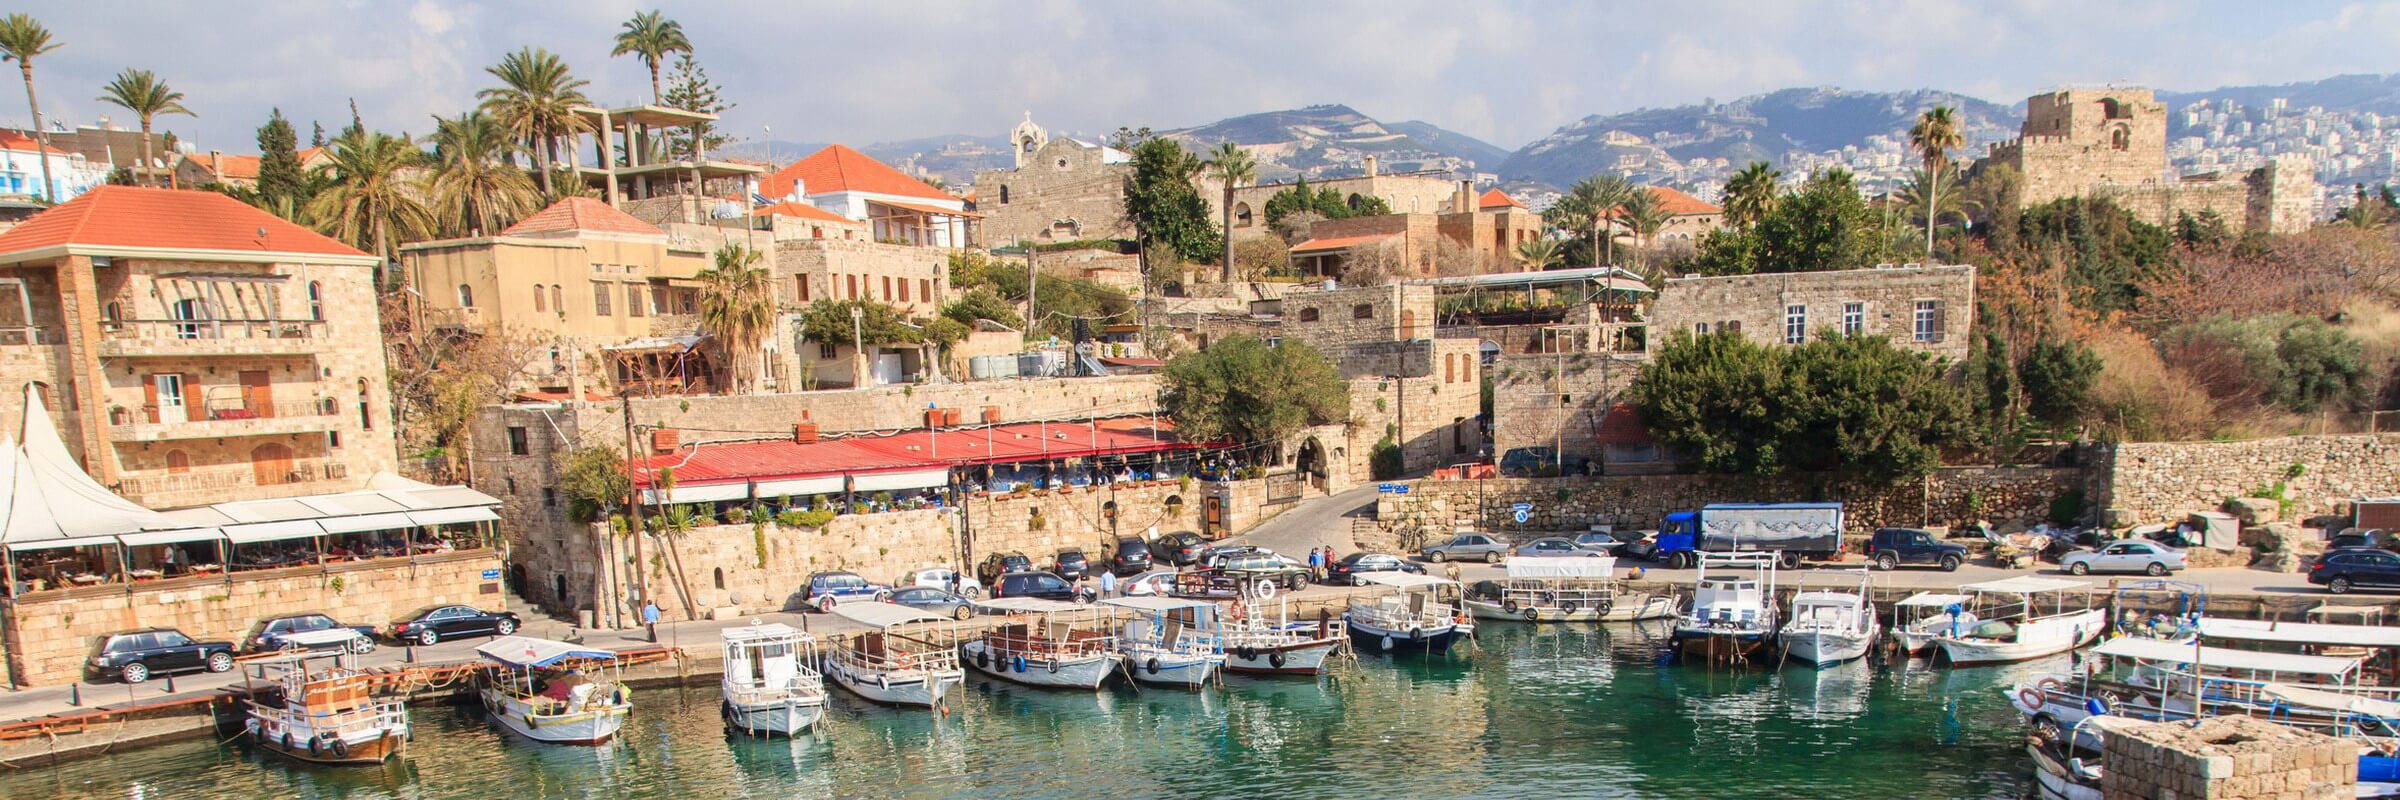 Die Hafenstadt Byblos an der Mittelmeerküste gehört zu den ältesten permanent besiedelten Orten der Welt und wurde 1984 zum UNESCO-Weltkulturerbe erklärt.